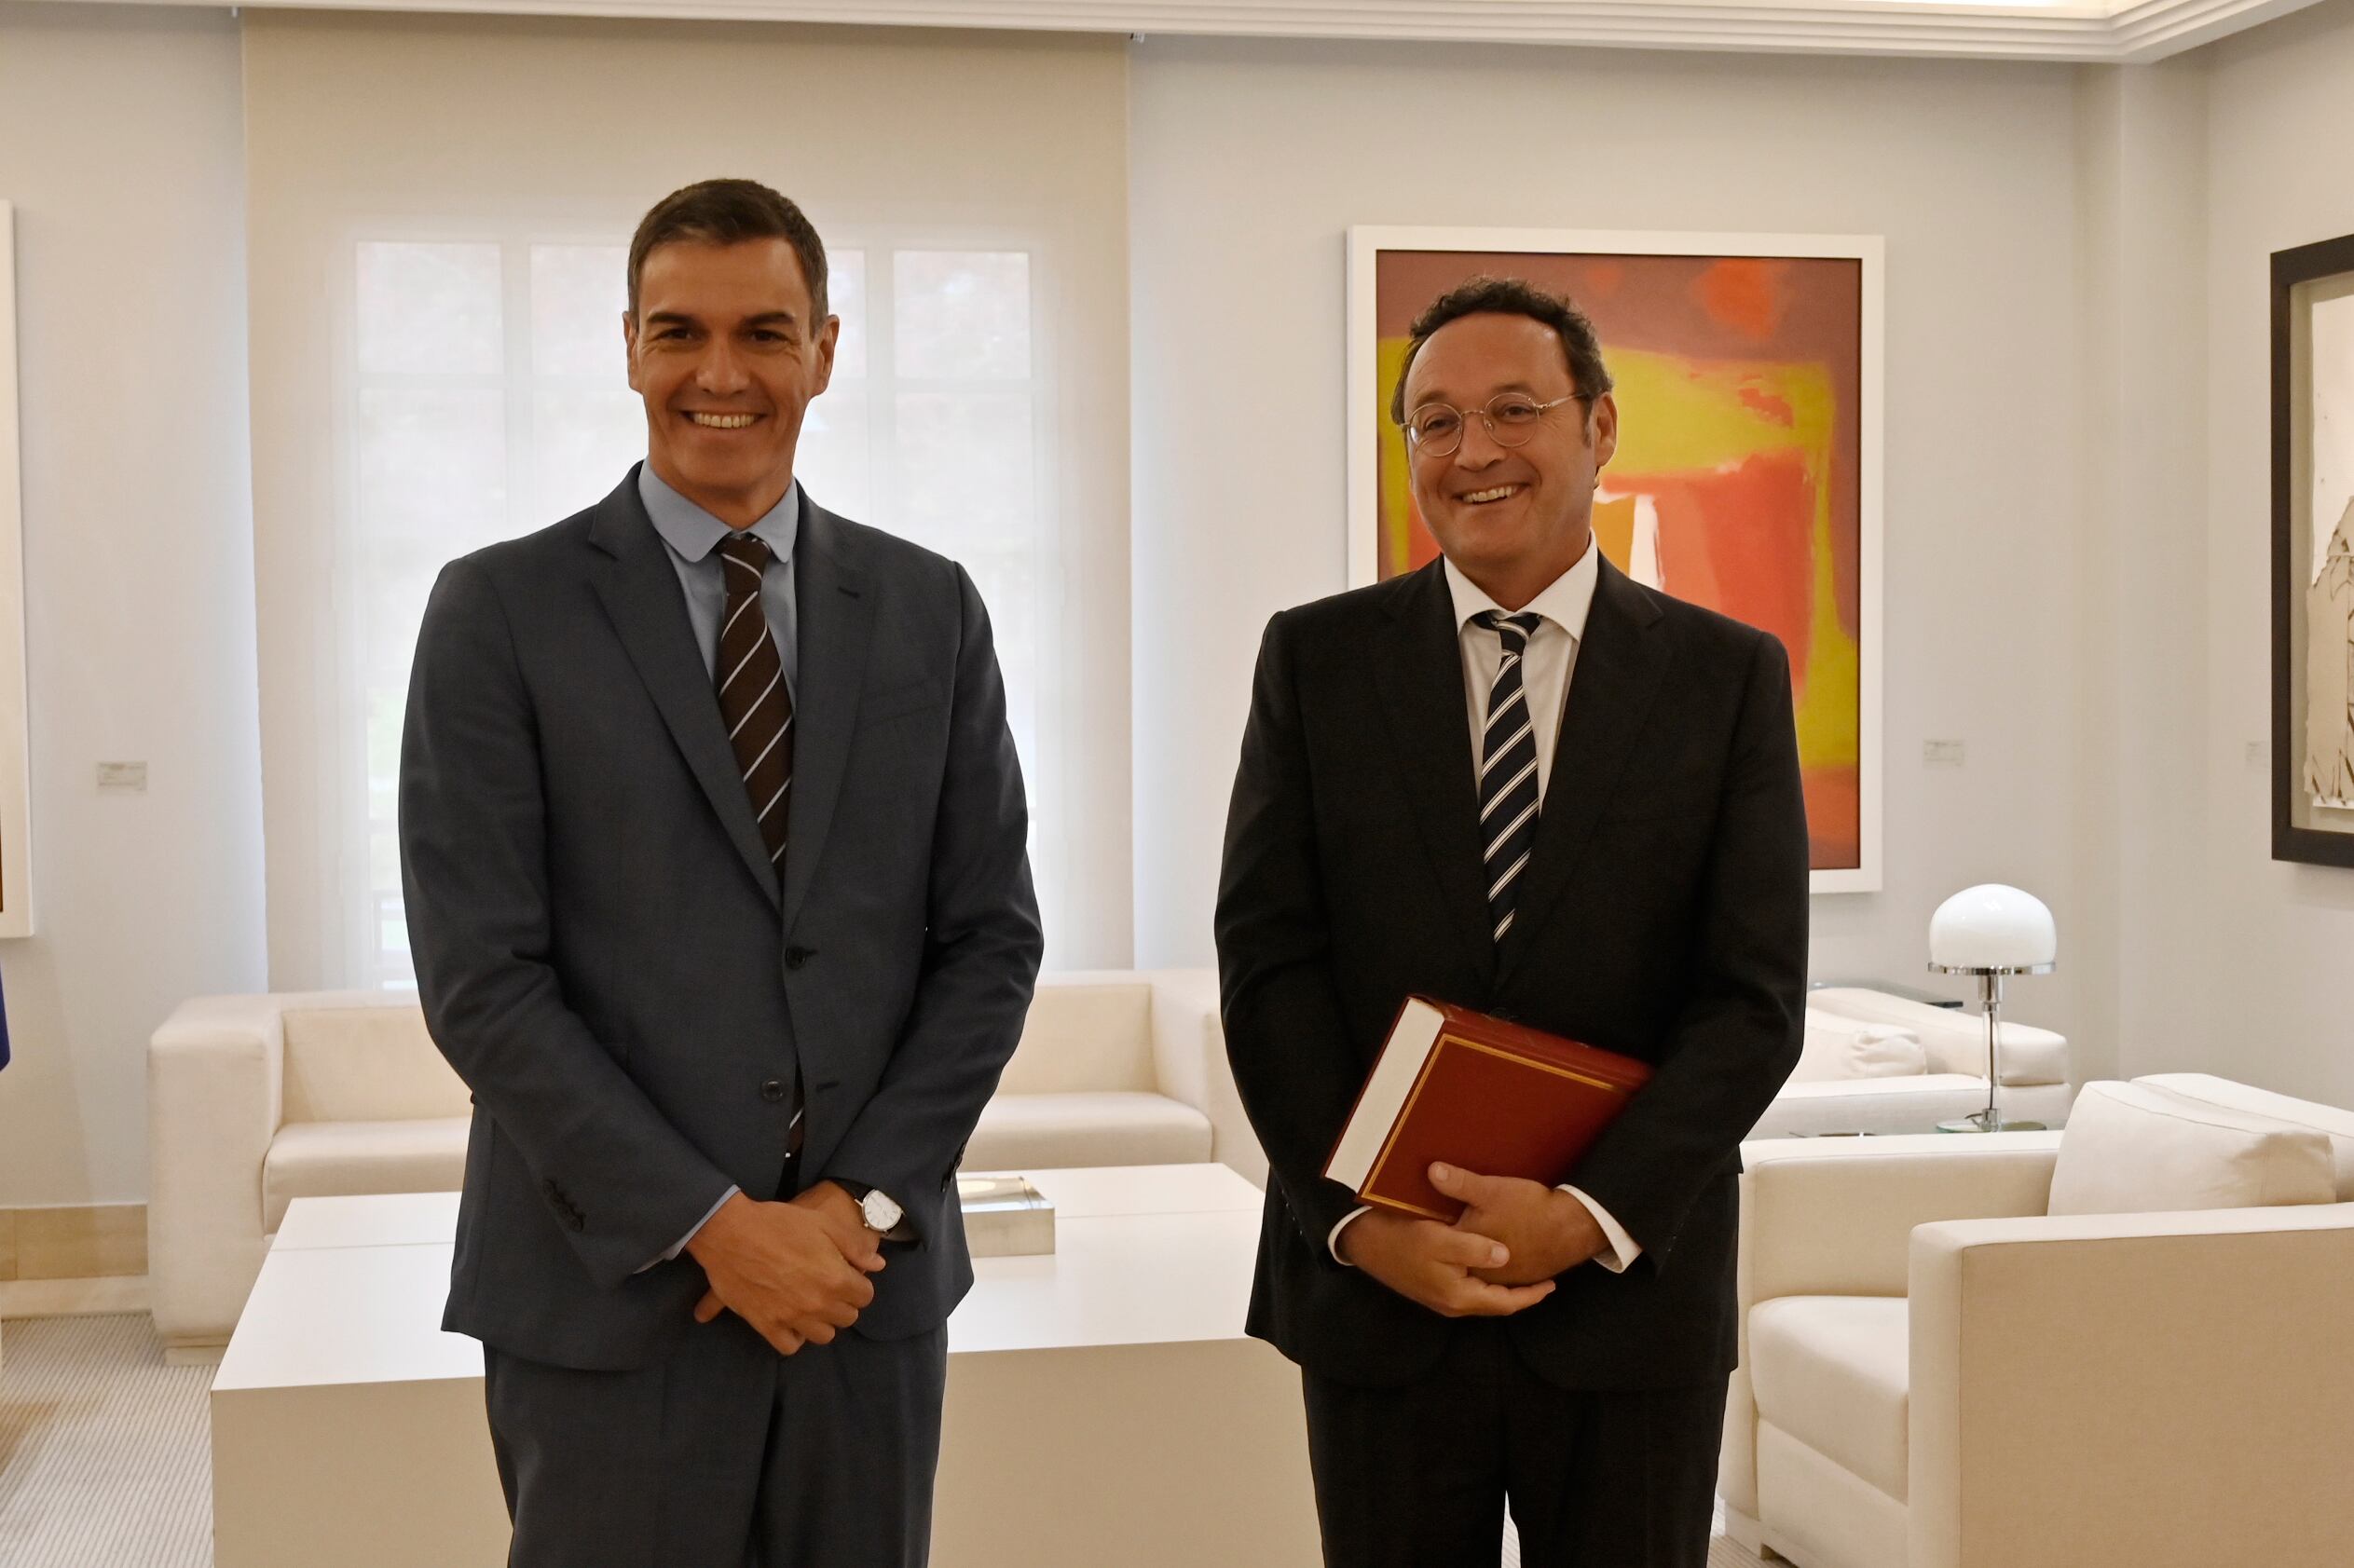 El presidente del Gobierno en funciones, Pedro Sánchez (izquierda), se reúne con el fiscal general del Estado, Álvaro García Ortiz, este miércoles en el Palacio de la Moncloa.